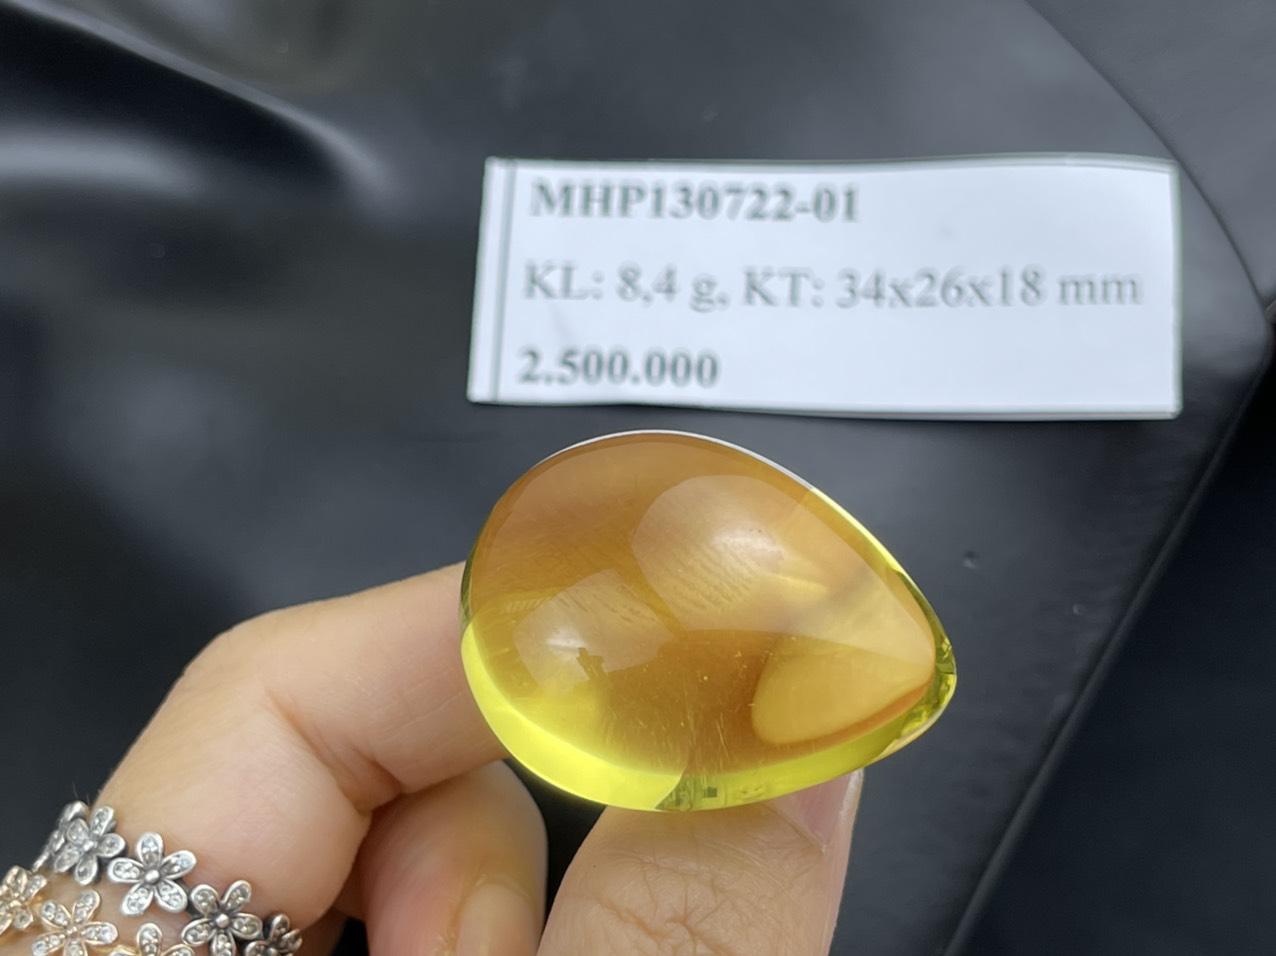 Đá hổ phách vàng MHP130722-01